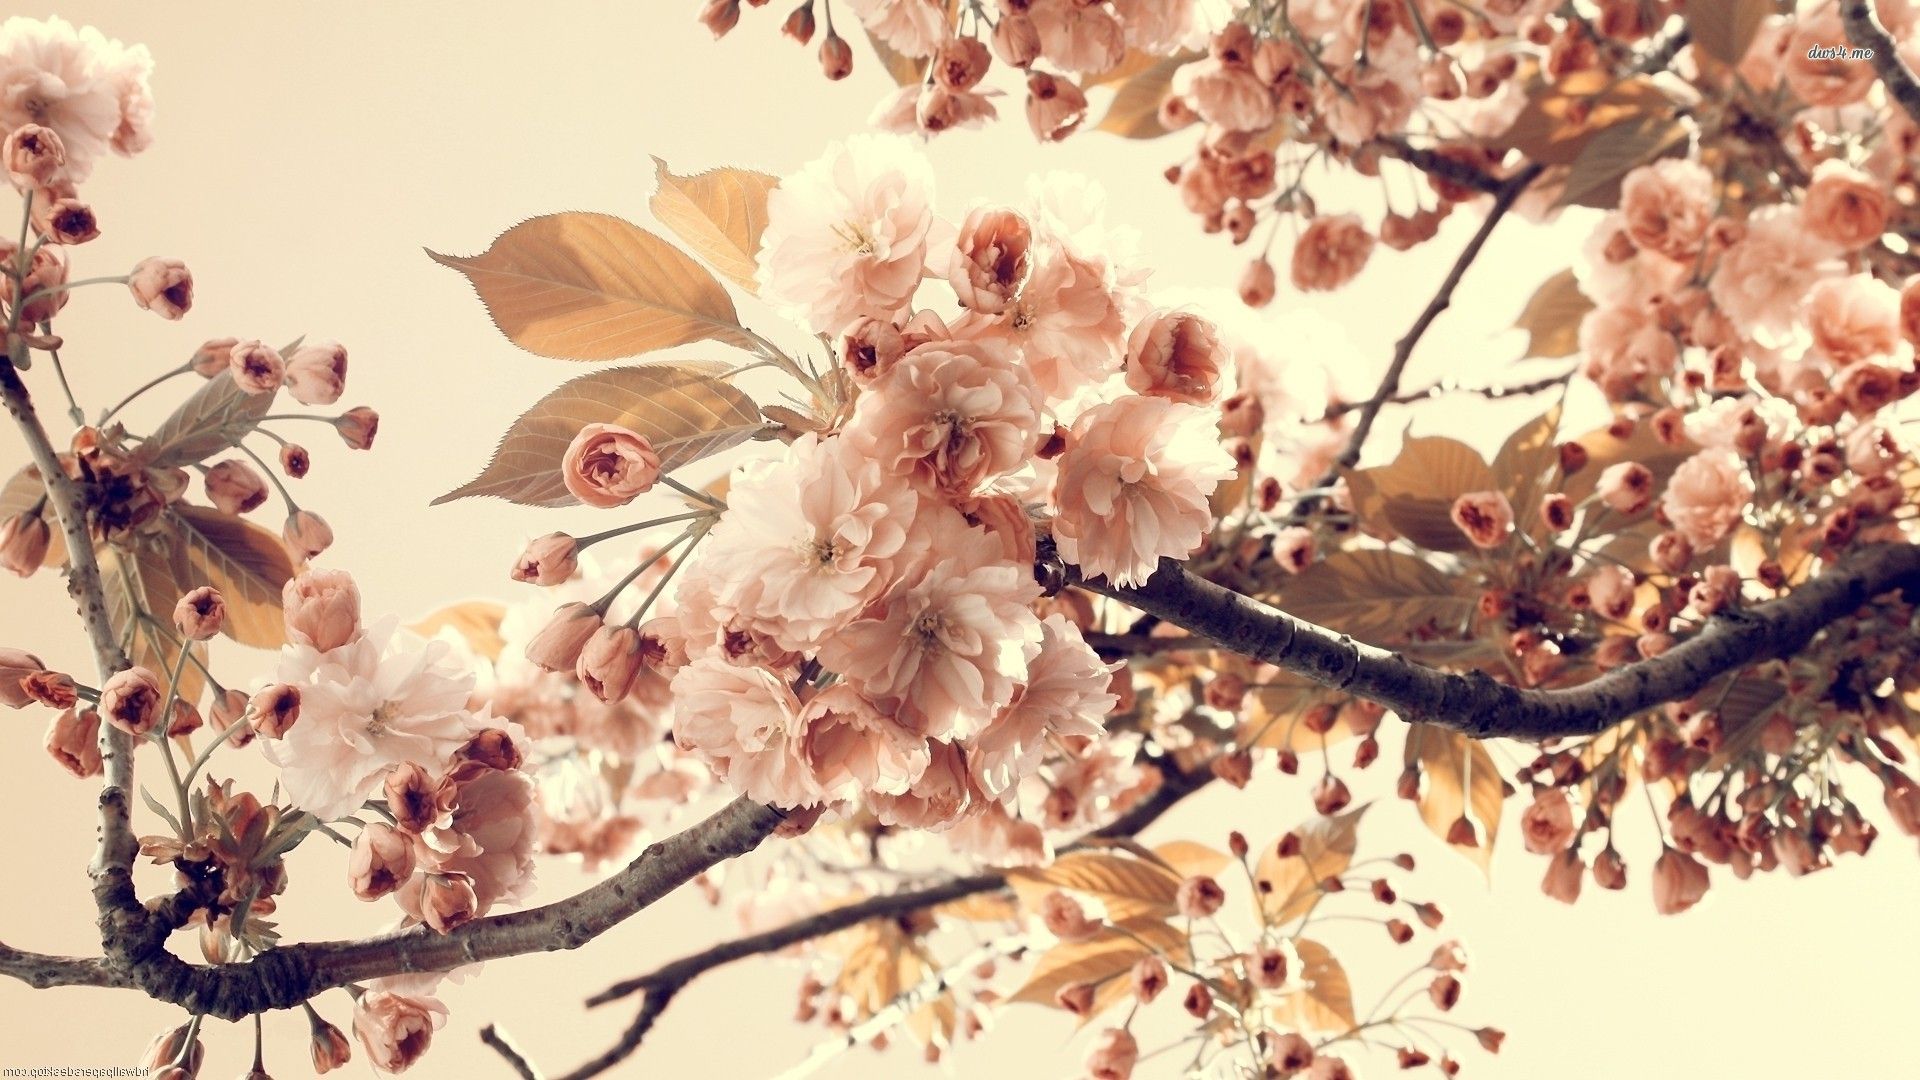 والپیپر فوق العاده قشنگ از شکوفه های درخت هلو با کیفیت عالی 